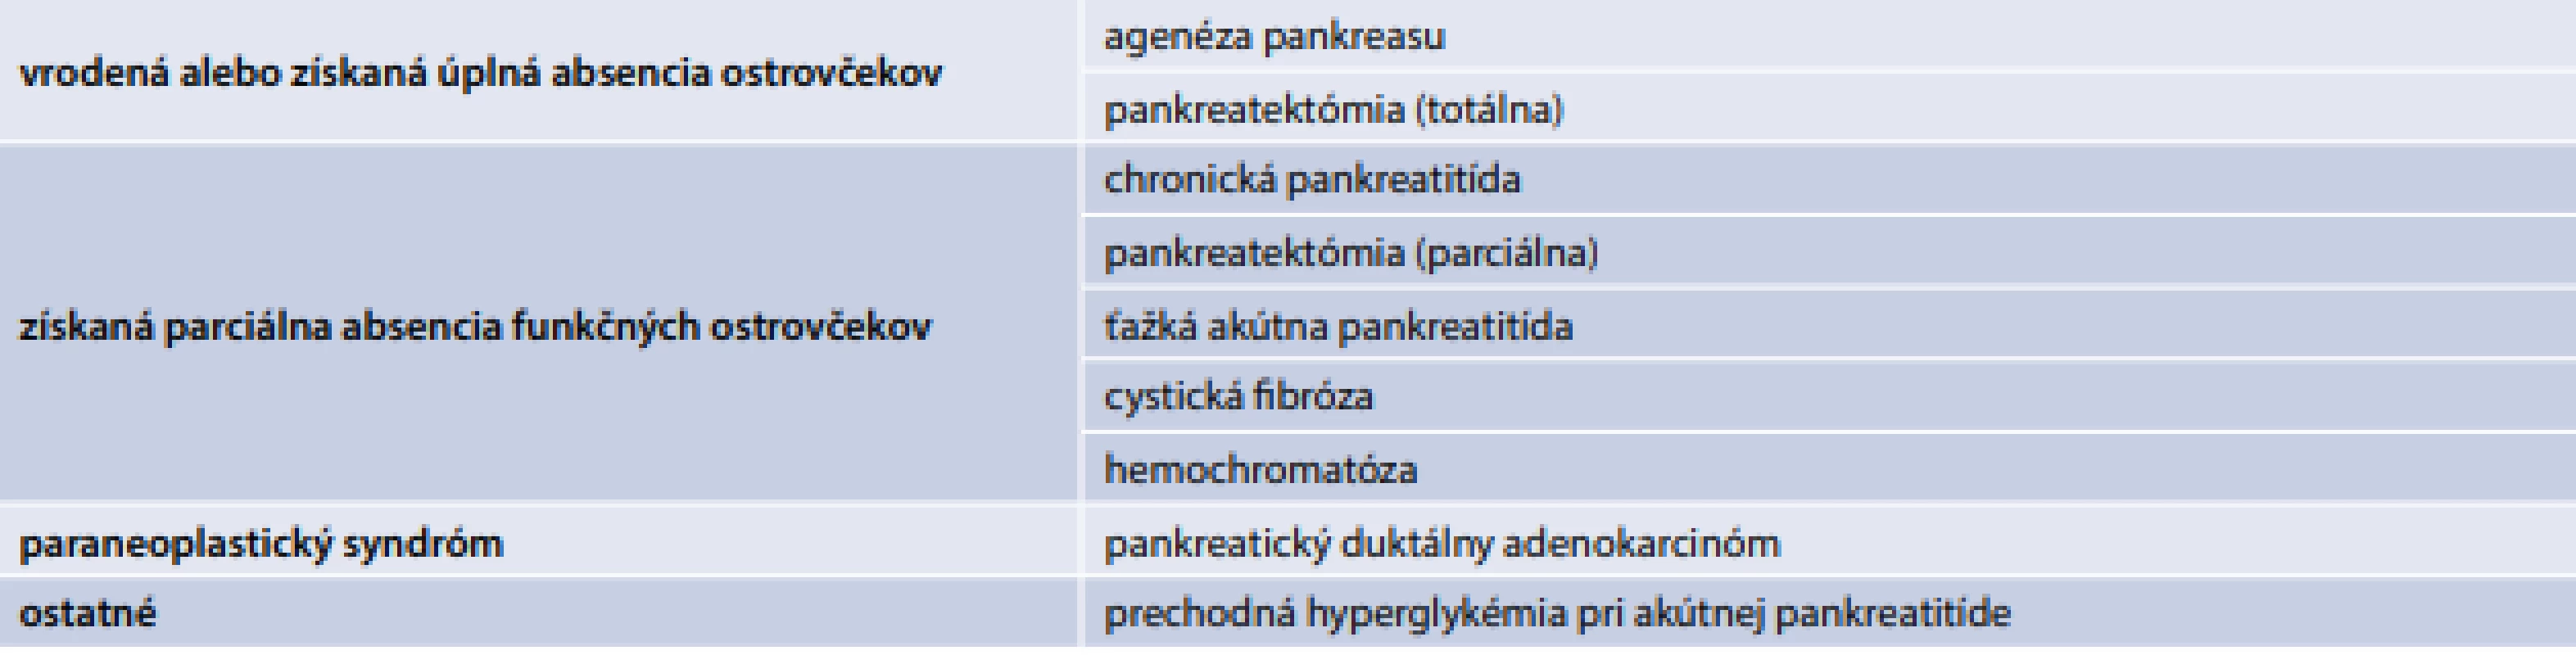 Navrhovaná subklasifikácia pankreatogénneho DM podľa potenciálnych mechanizmov.
Upravené podľa [7]